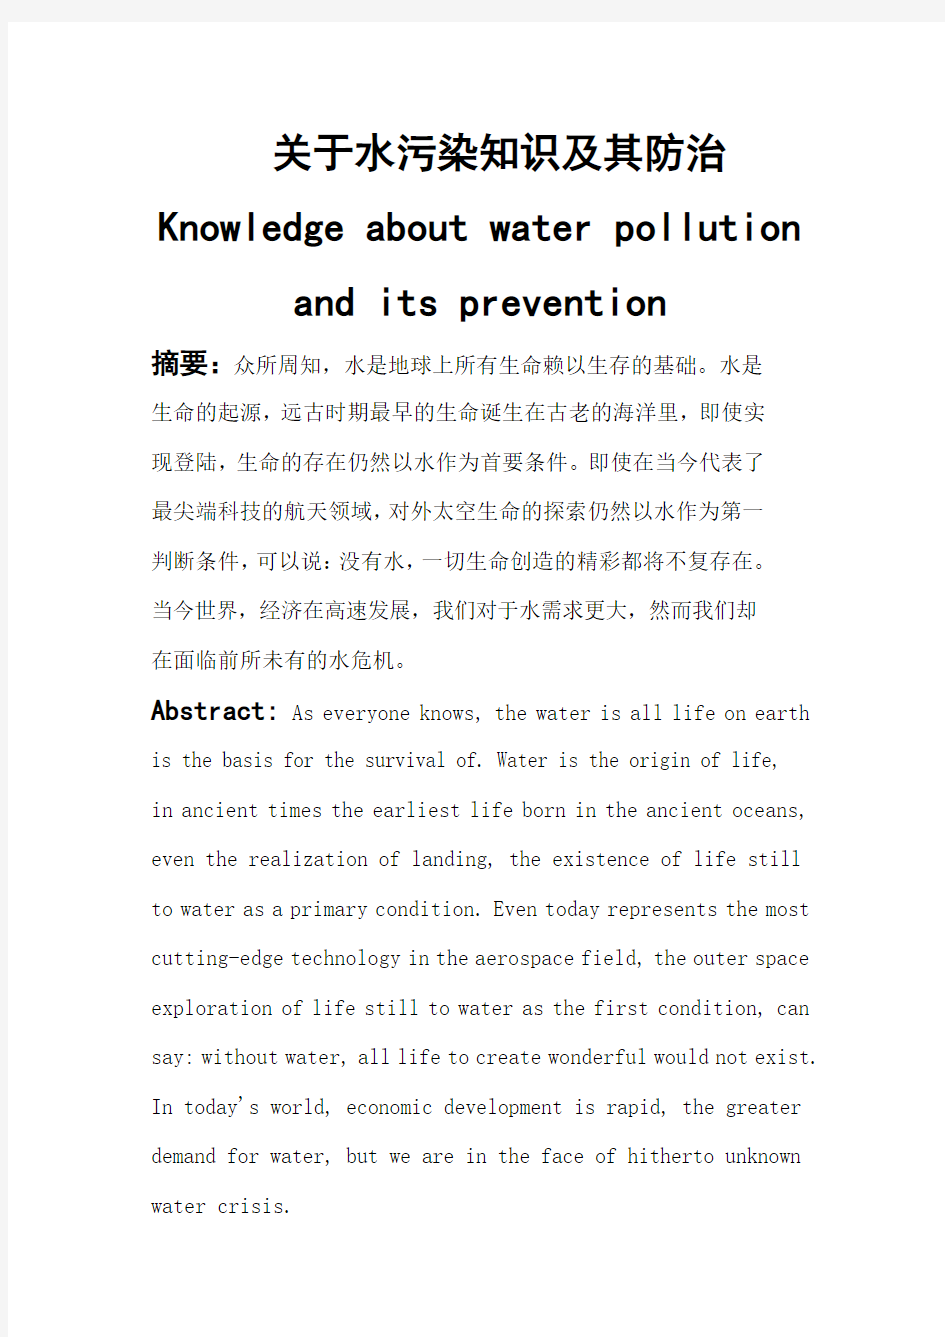 水污染防治论文